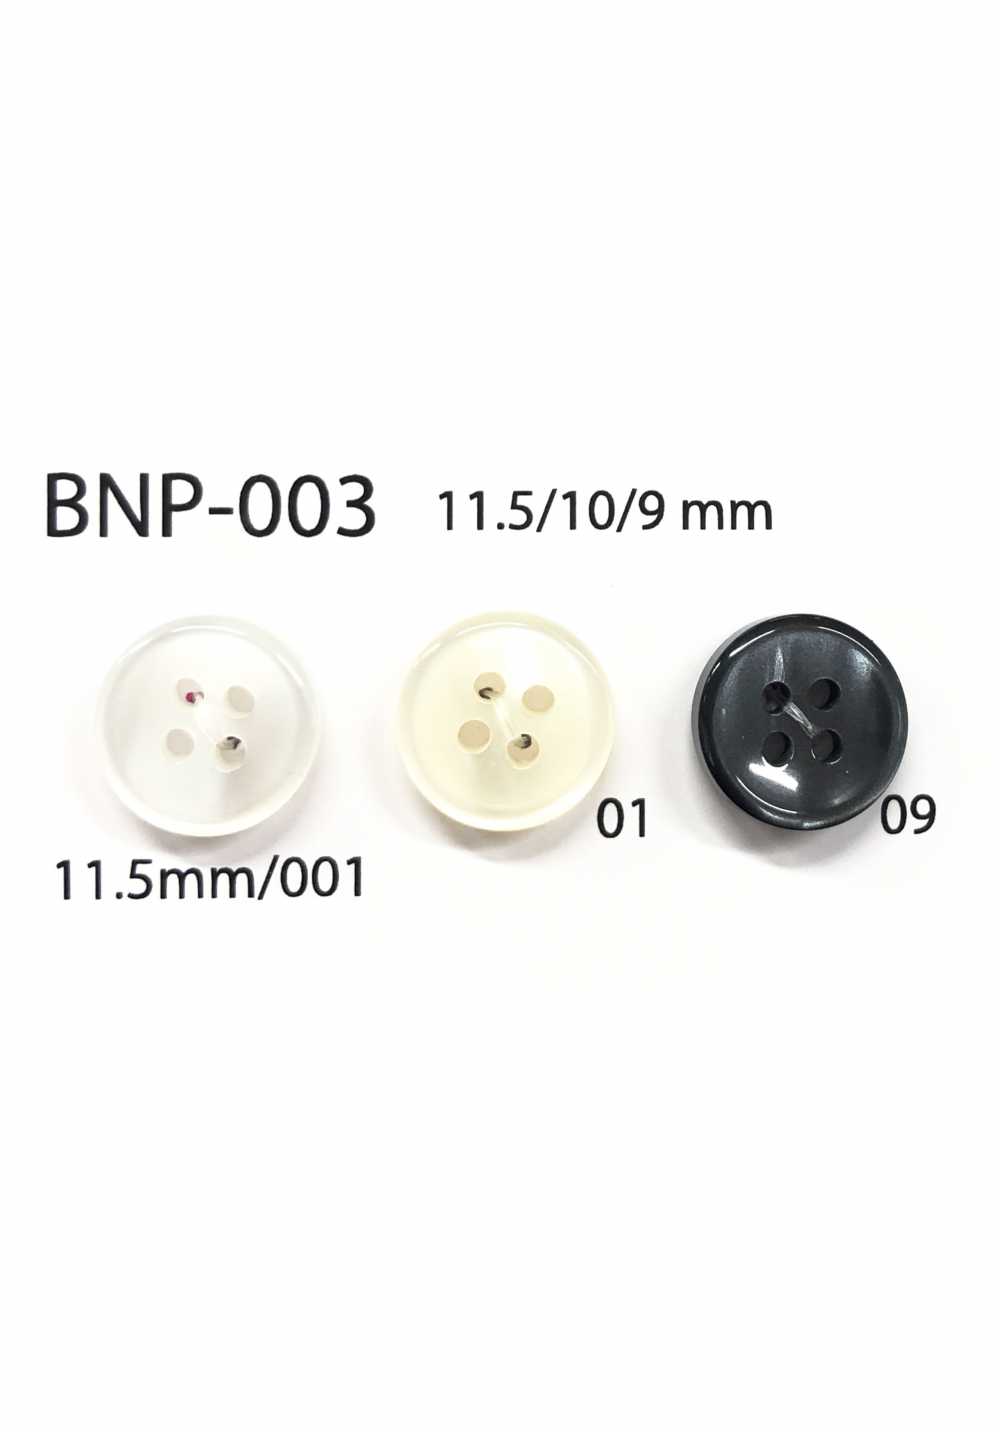 BNP-003 4-Loch-Knopf Aus Biopolyester[Taste] IRIS